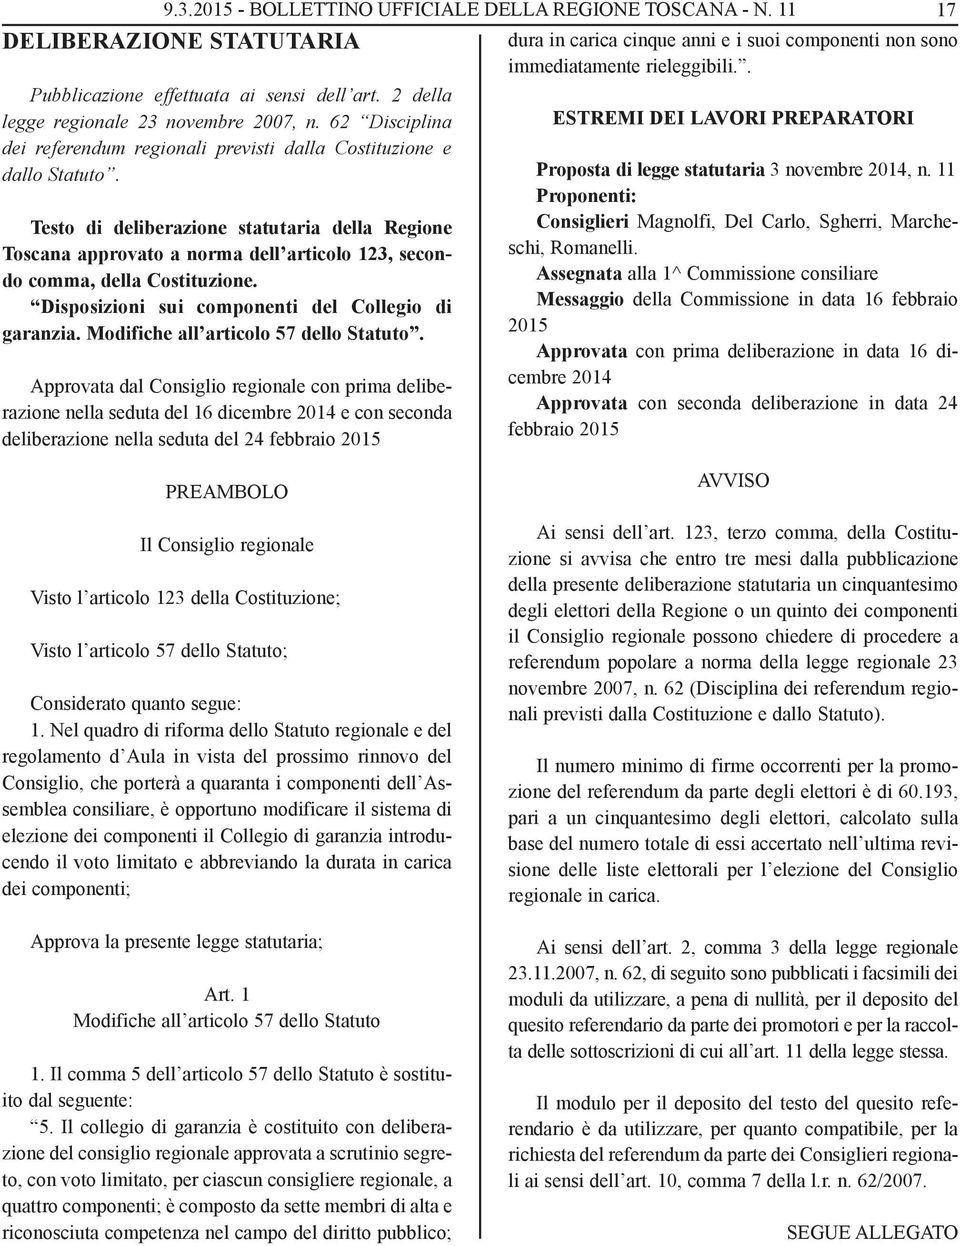 Testo di deliberazione statutaria della Regione Toscana approvato a norma dell articolo 123, secondo comma, della Costituzione. Disposizioni sui componenti del Collegio di garanzia.